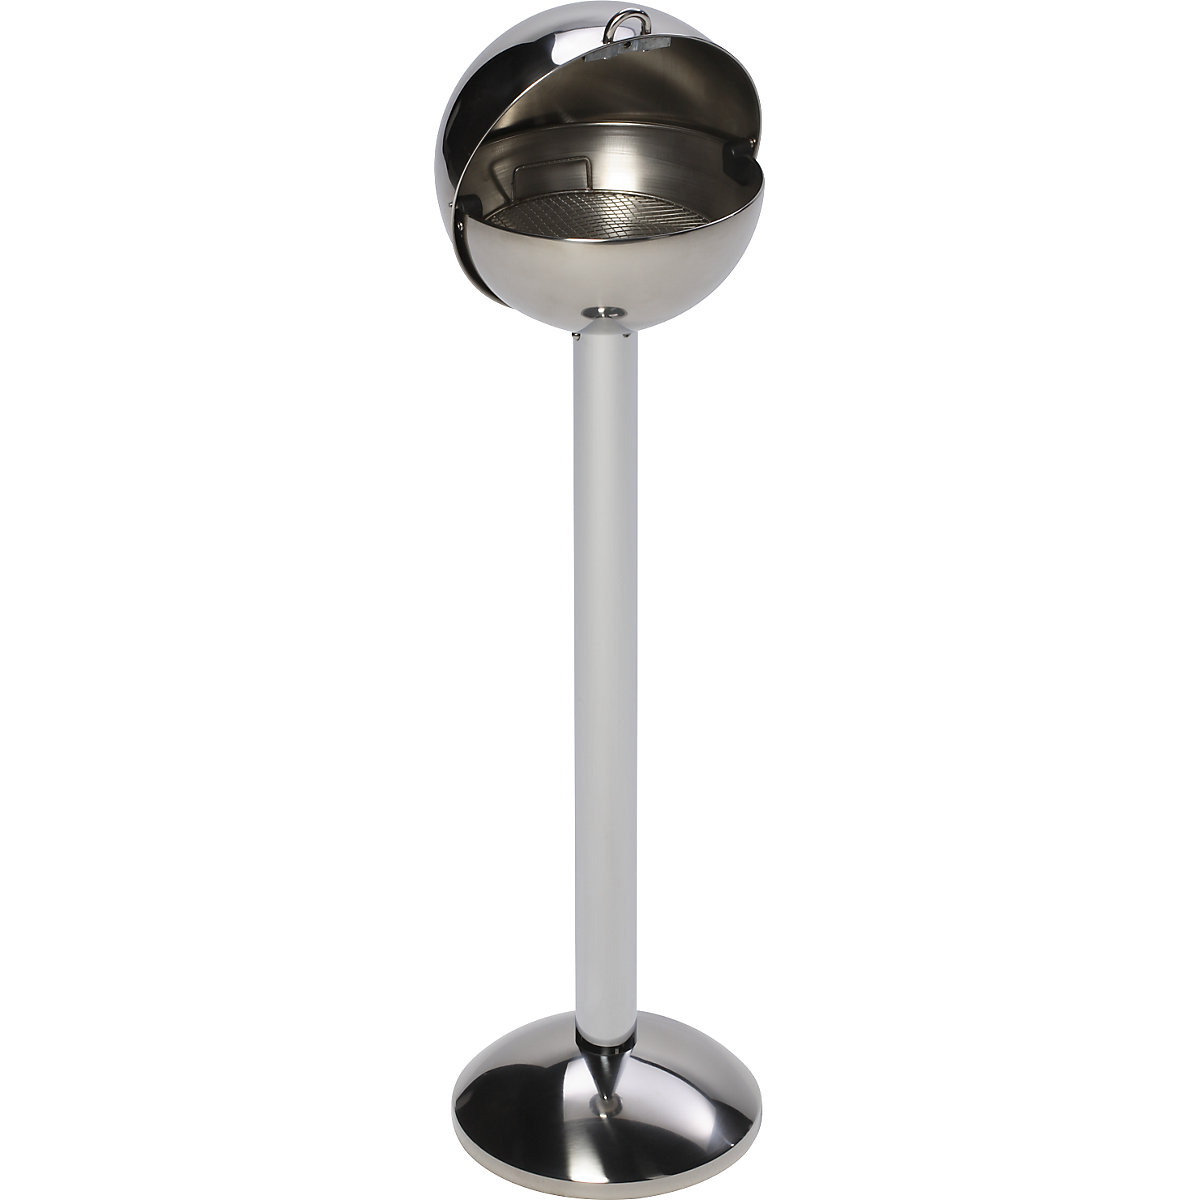 Stojeća pepeljara od nehrđajućeg čelika u obliku kugle – VAR